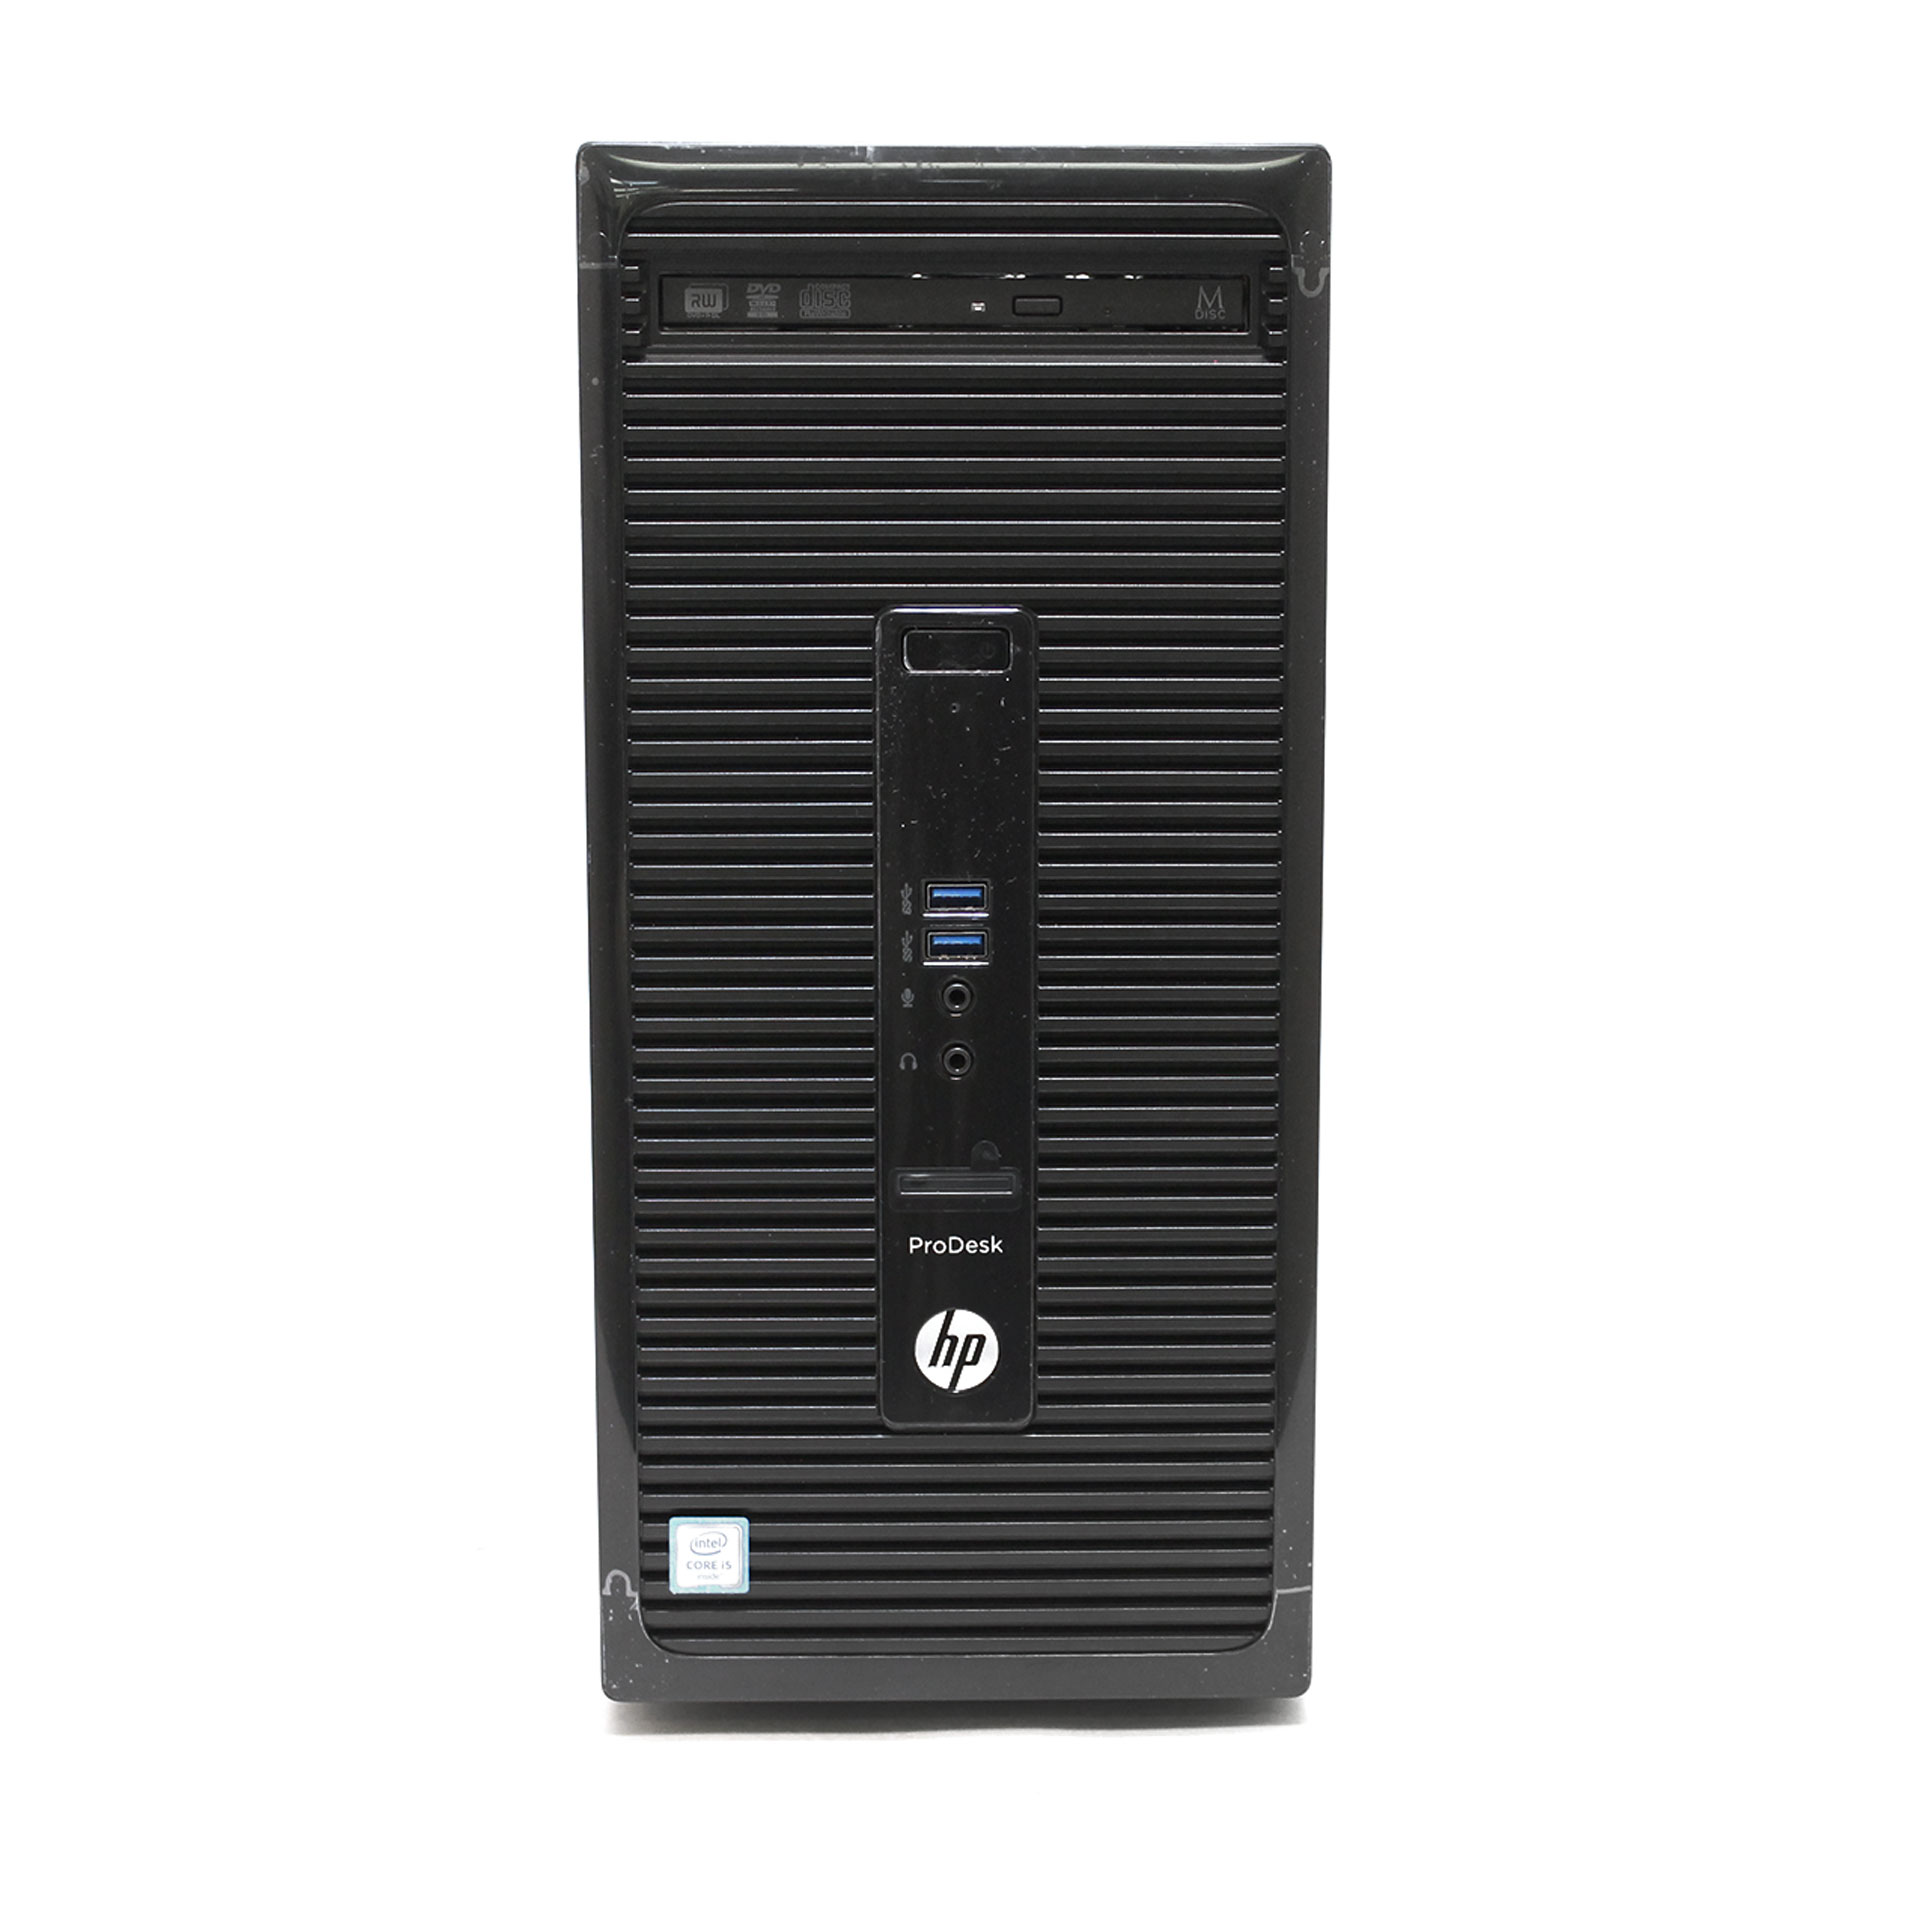 HP ProDesk 400 G3 Core i5 6500 3.2 GHz 4GB 500GB V0C45UT#ABA - Click Image to Close